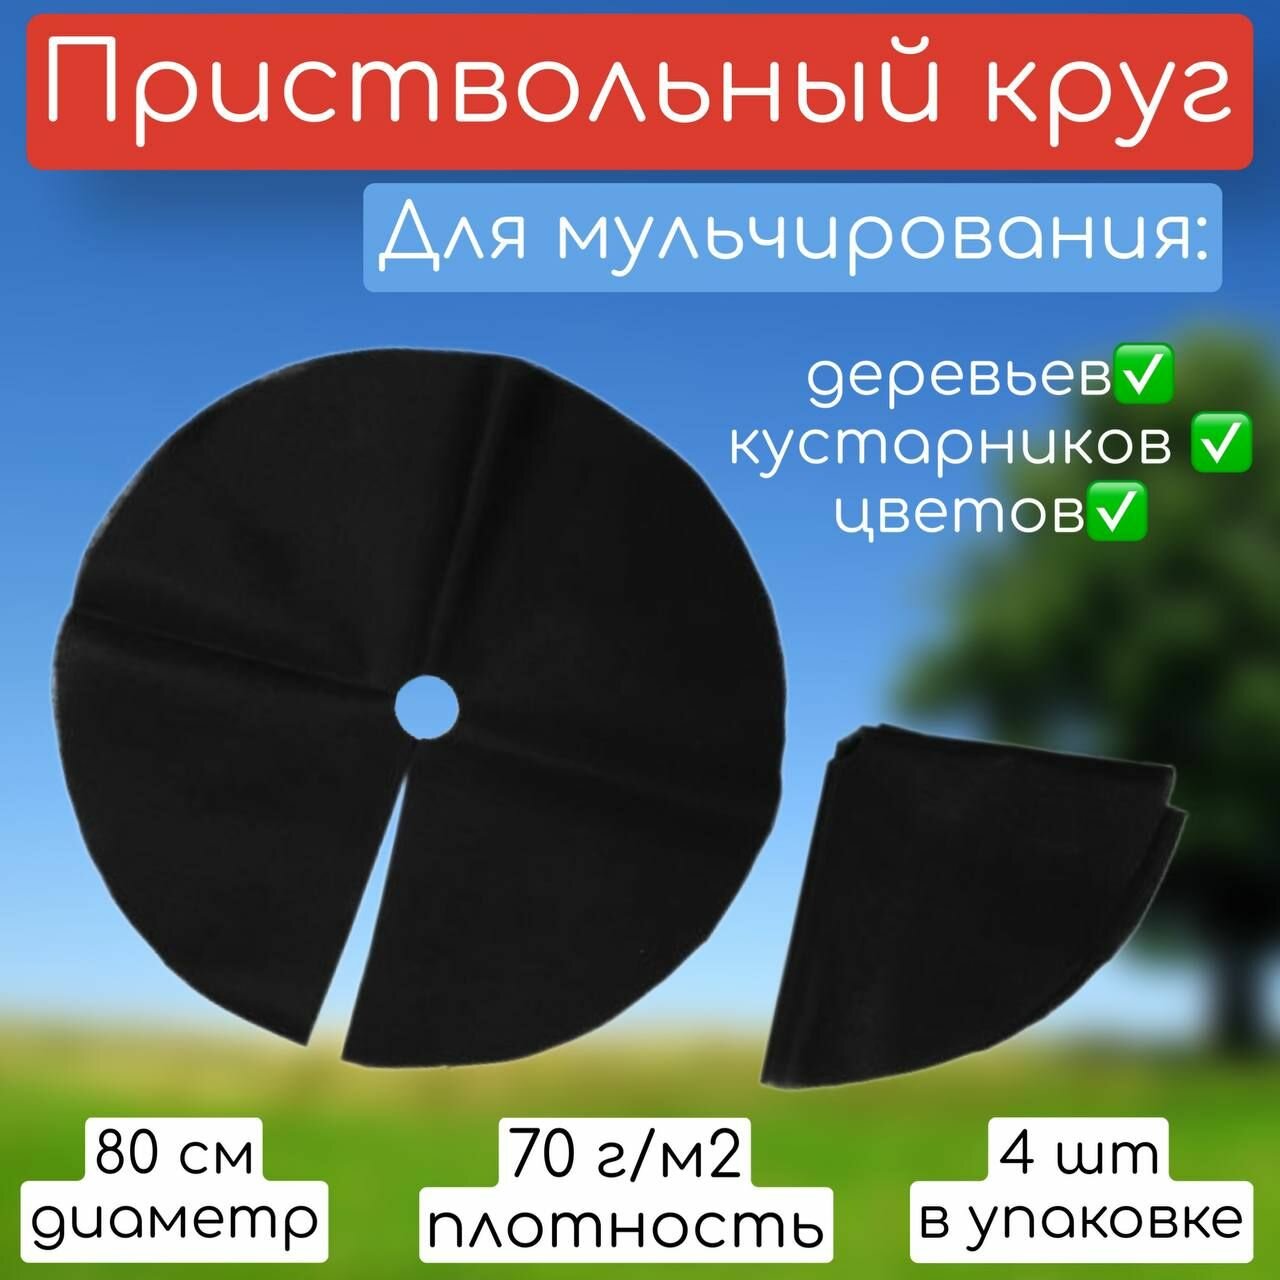 Приствольный круг из спанбонда диаметр 80 см 4 шт / Укрывной, мульчирующий материал/ Защита стволов кустарников и деревьев